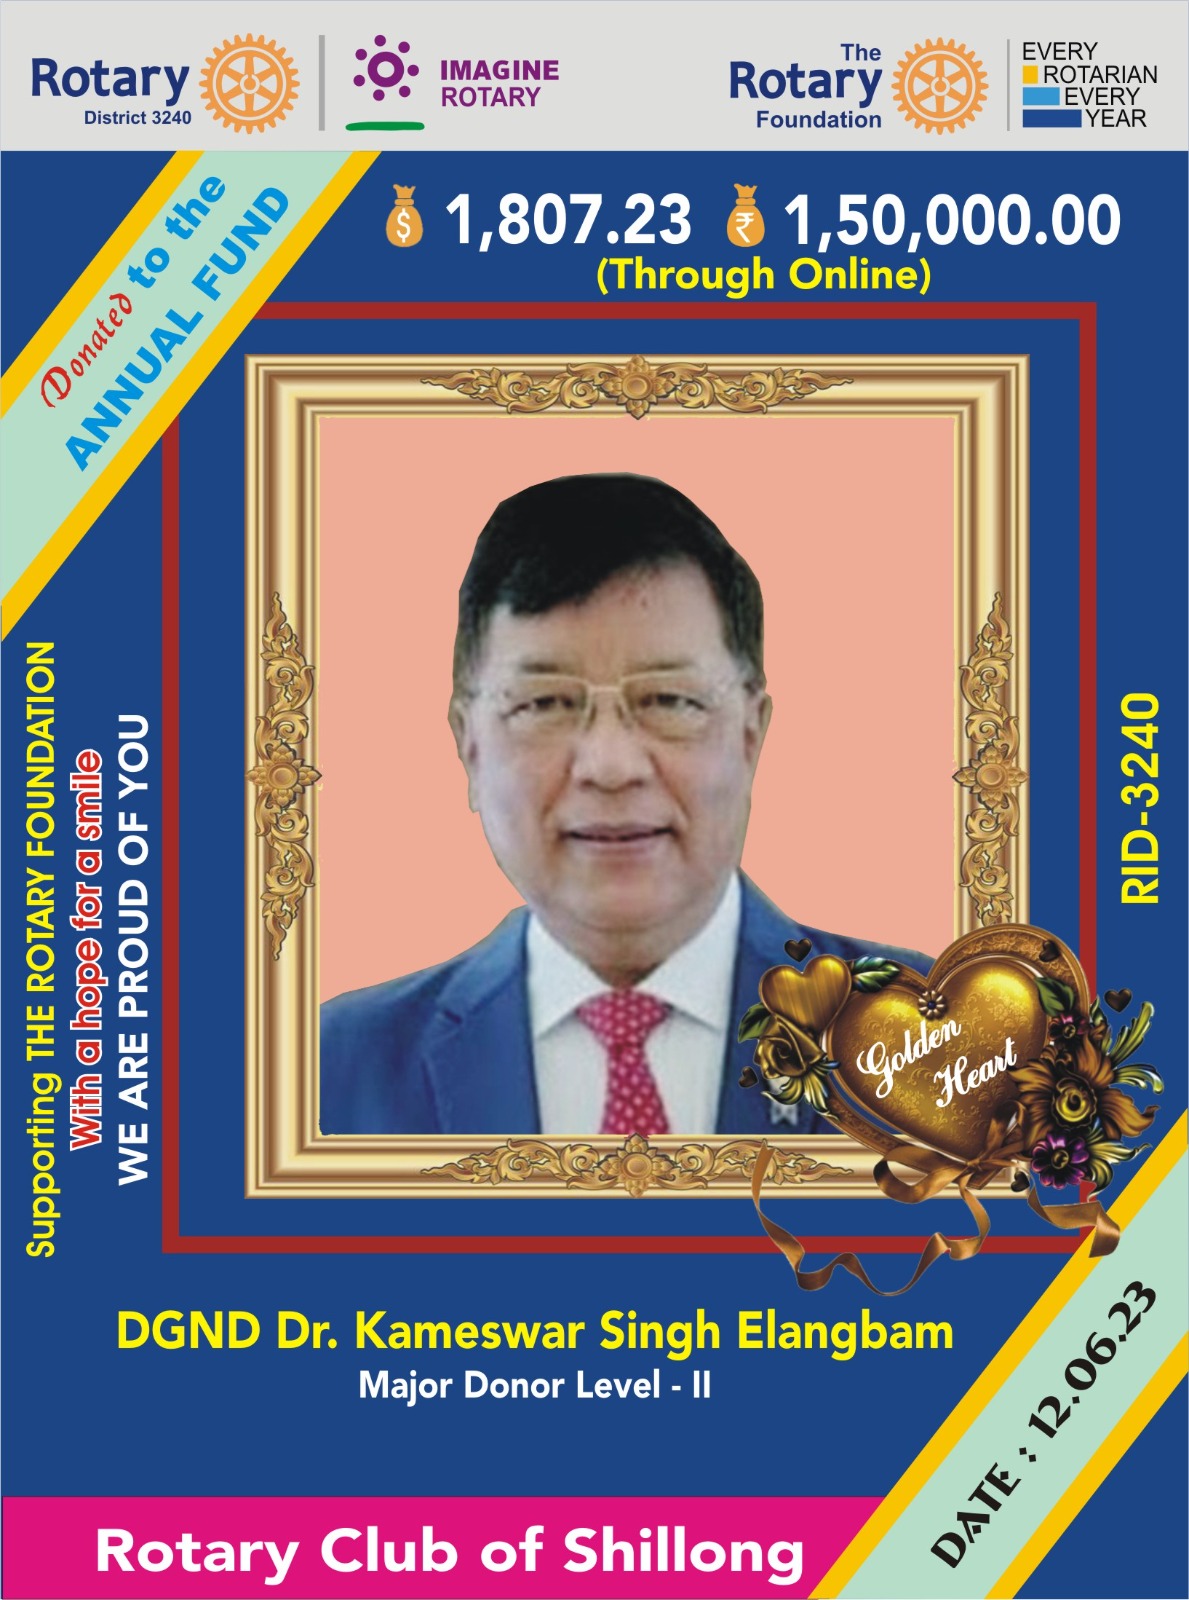 Annual Fund by DGND Rtn Dr. Kameswar Singh Elangbam